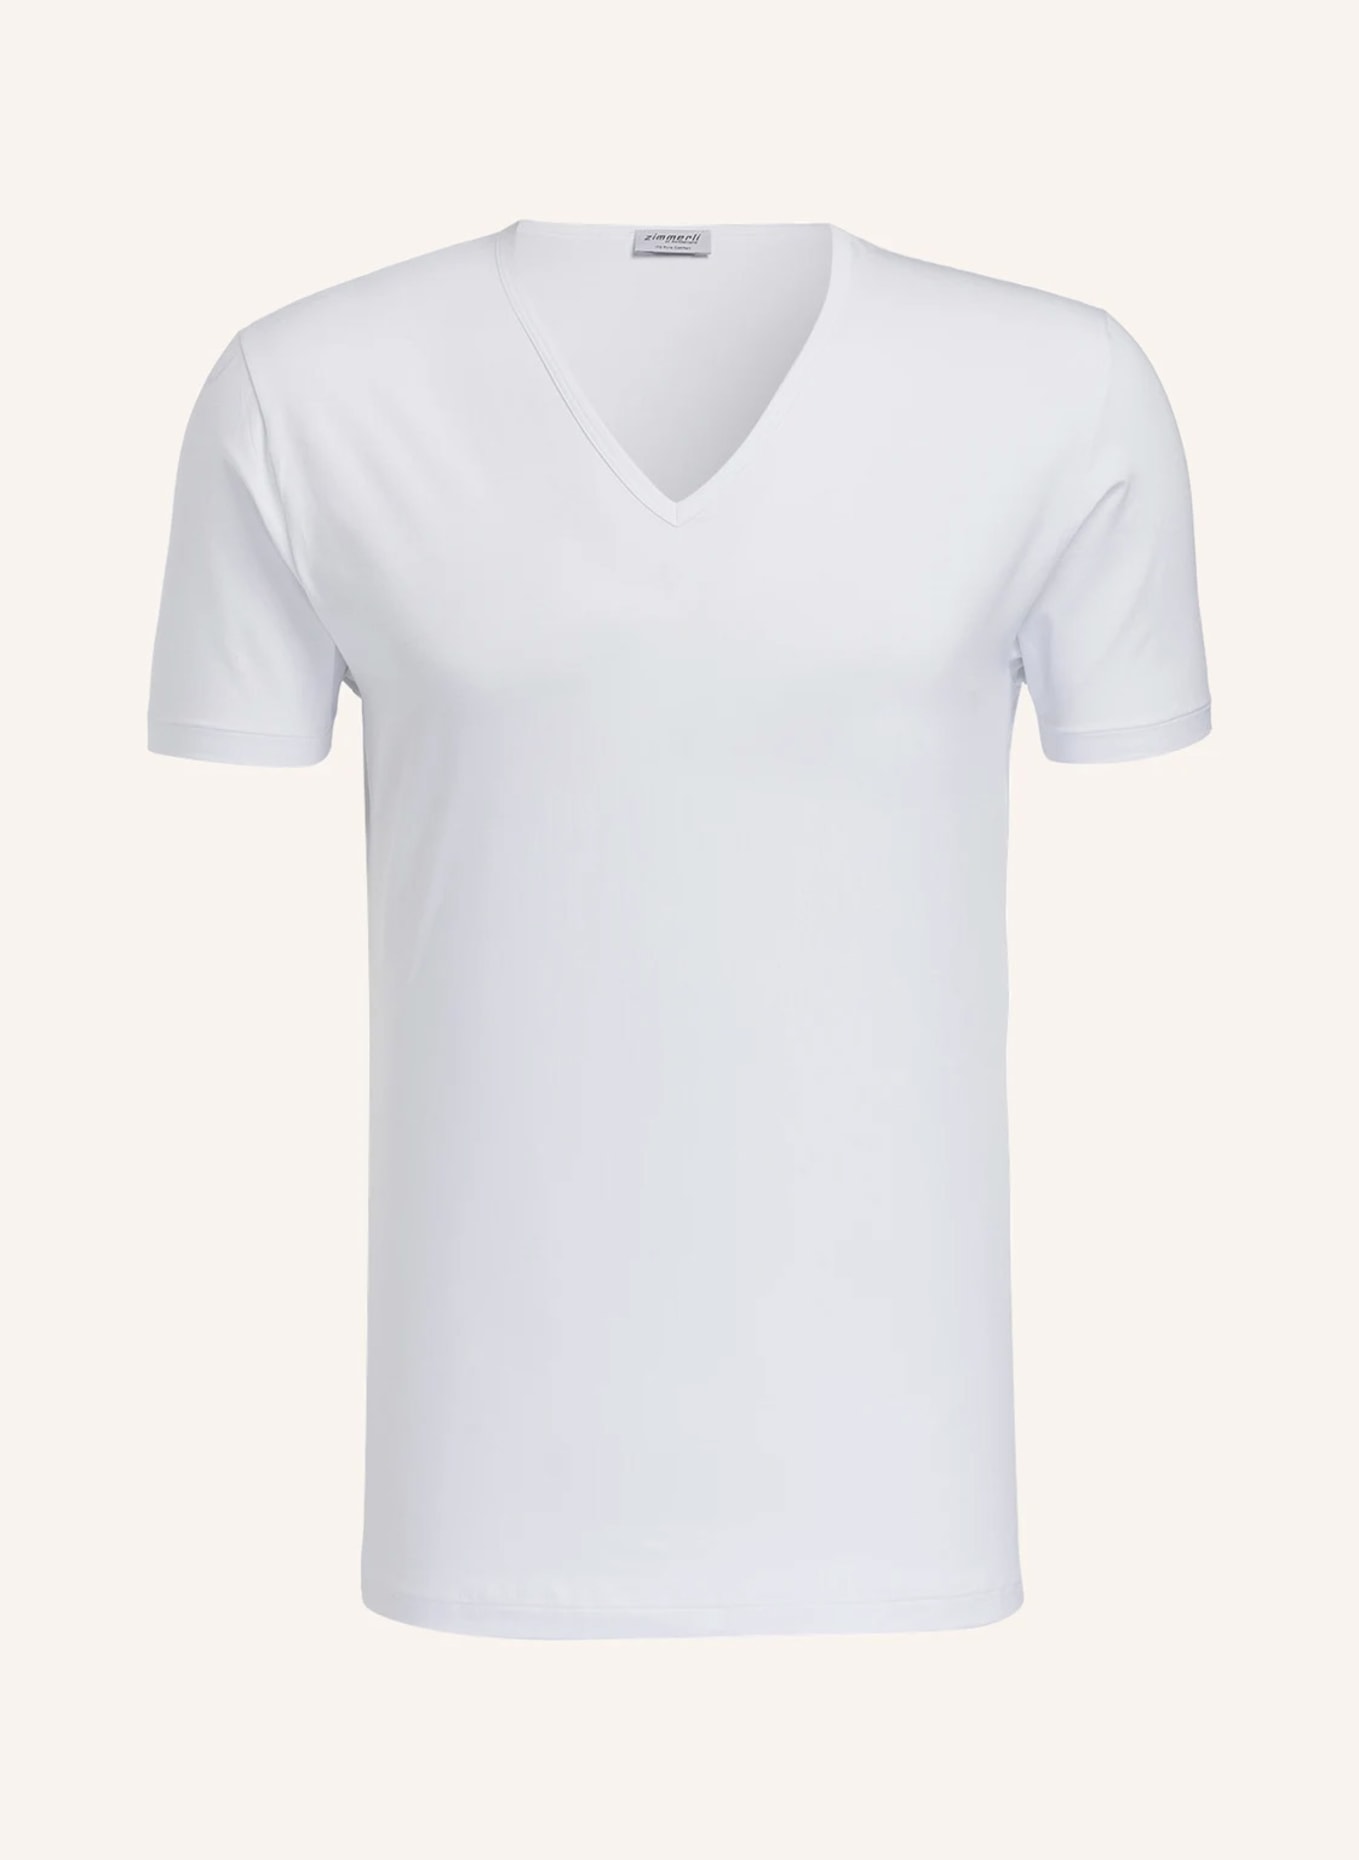 zimmerli V-Shirt PURE COMFORT, Farbe: WEISS (Bild 1)